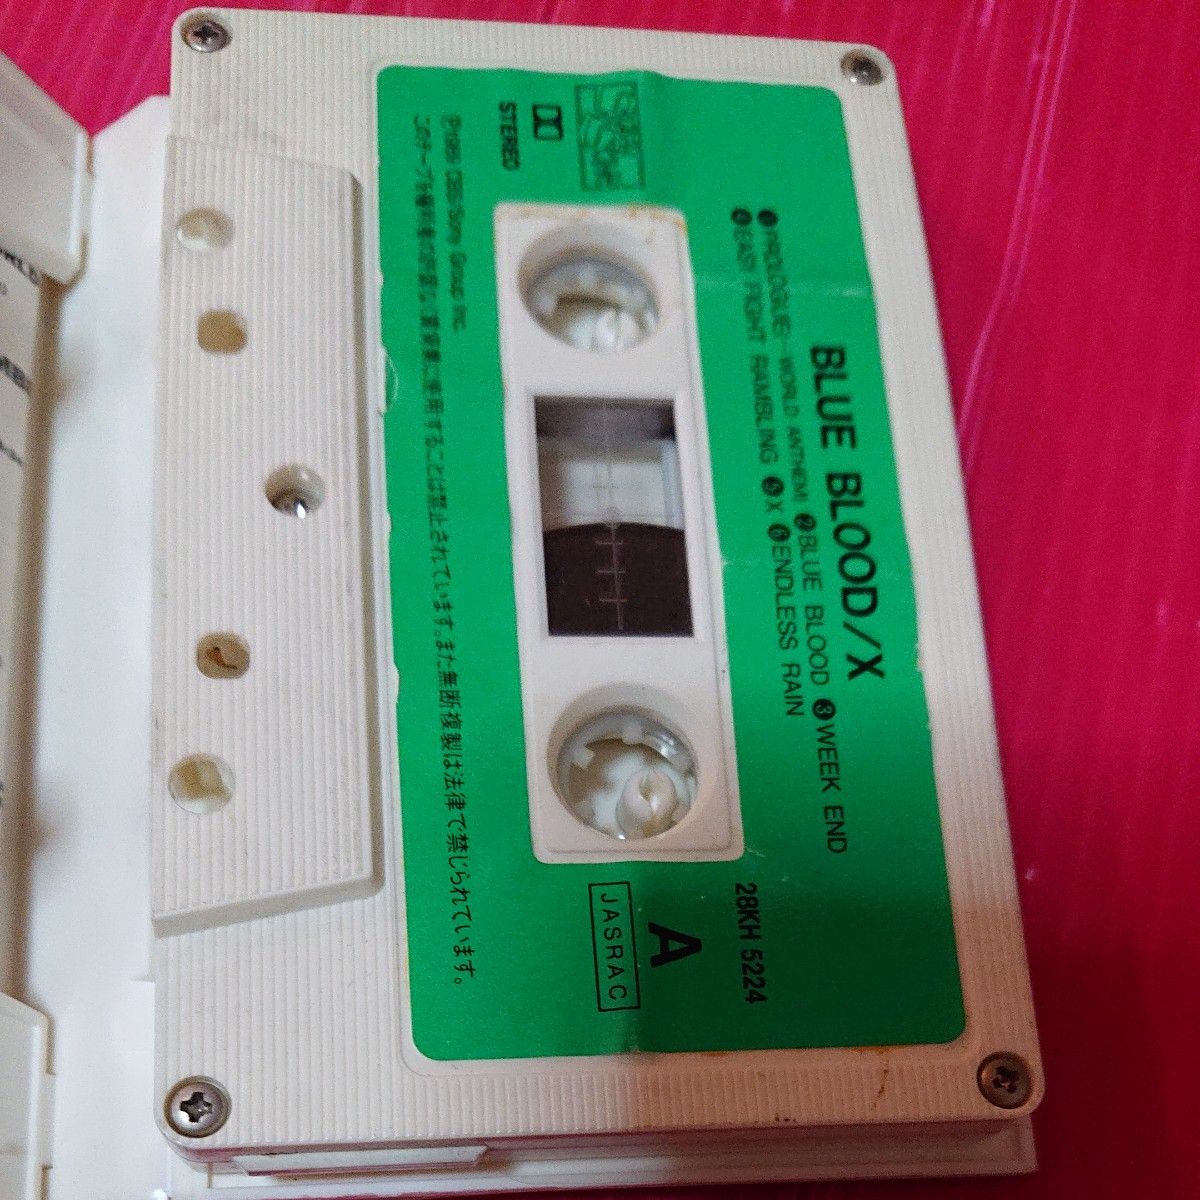 エックス ジャパン  x japan  カセットテープ ブルーブラッド blue blood カセットテープ